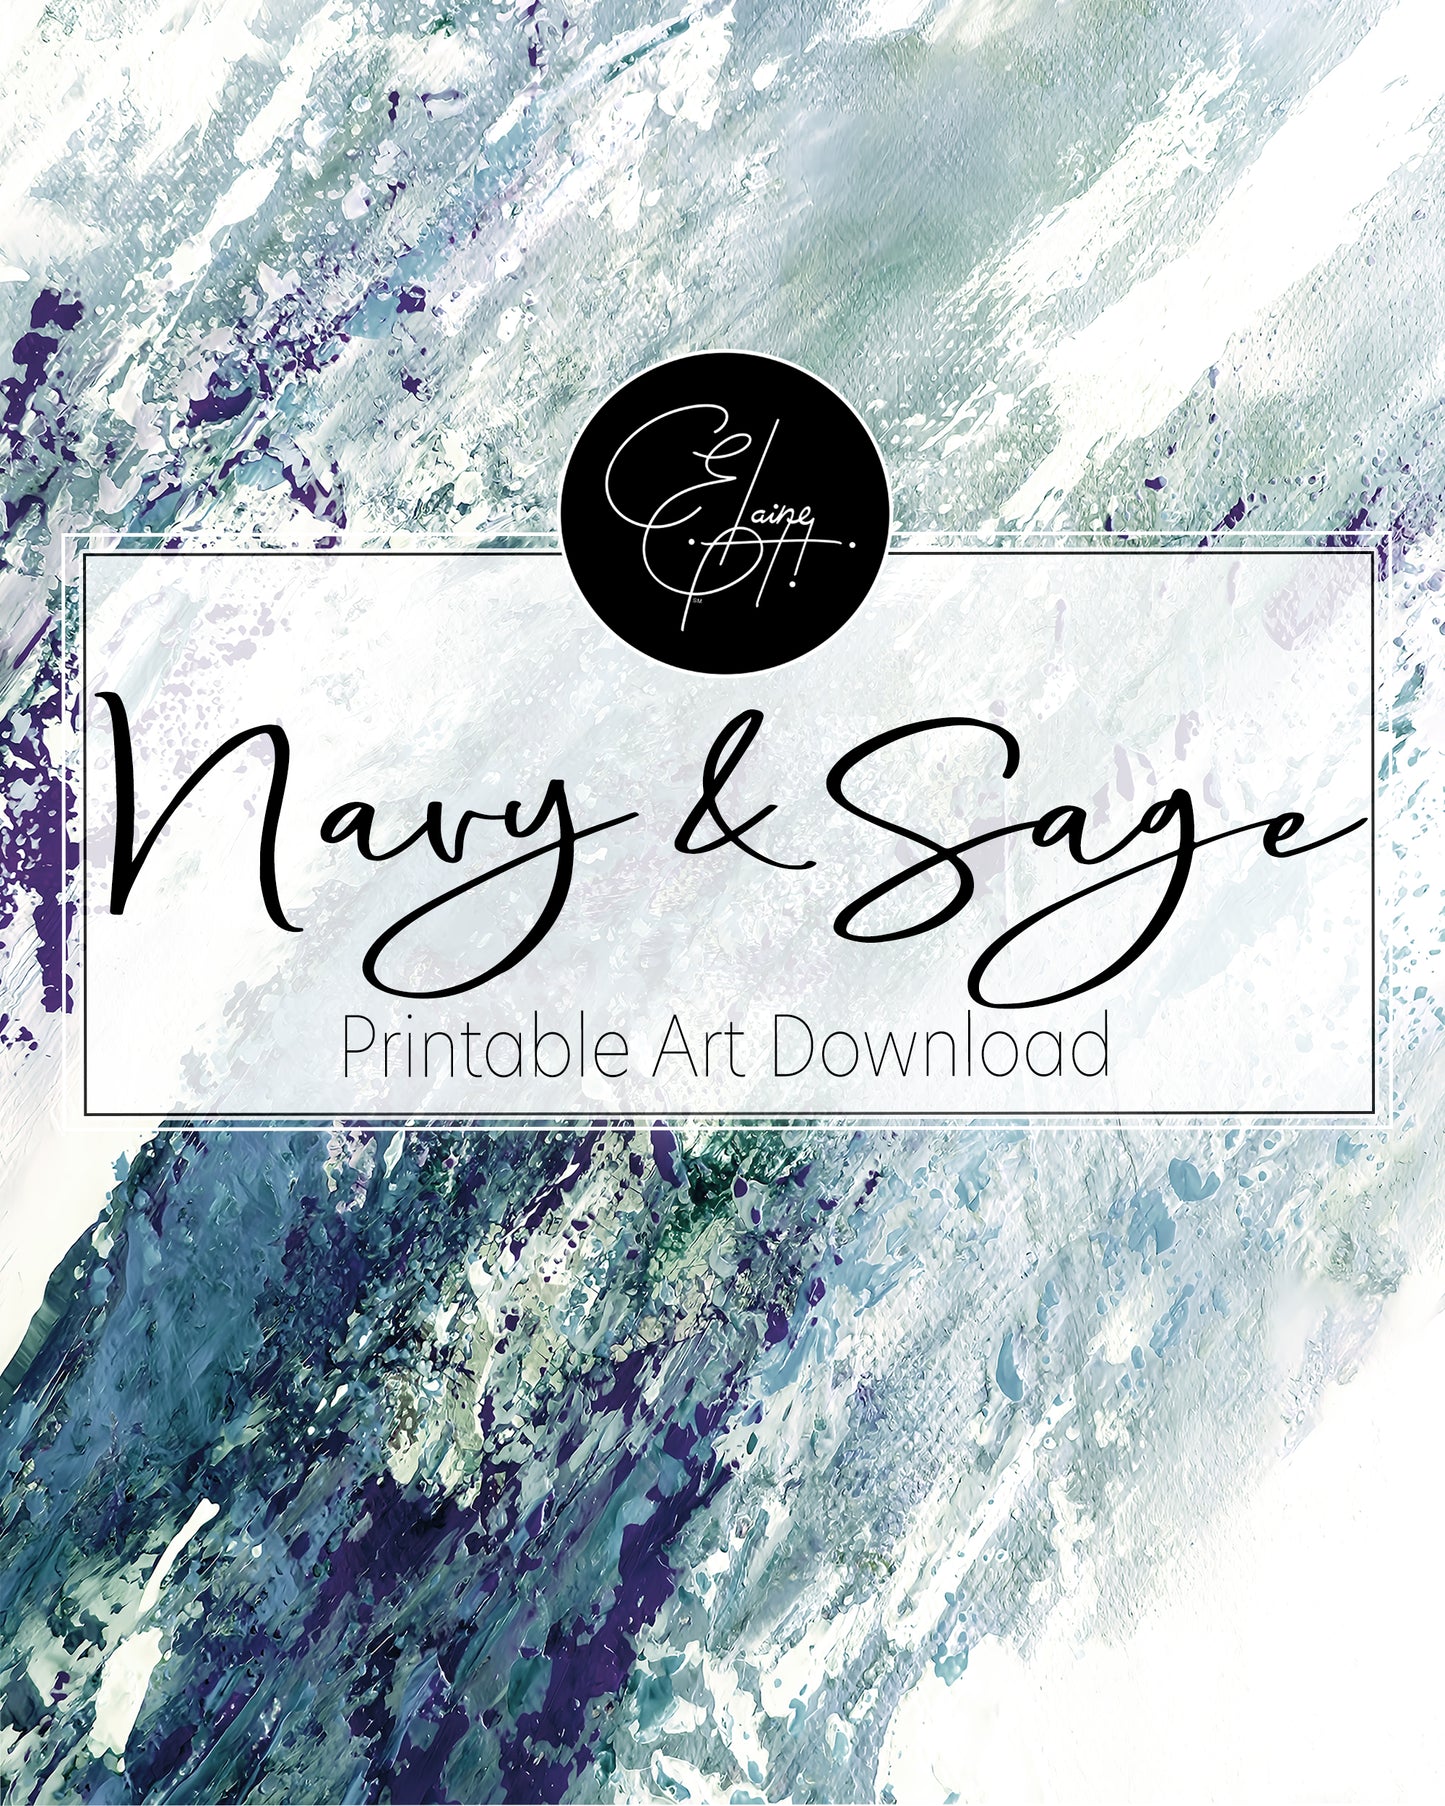 Navy & Sage - Printable Wall Art